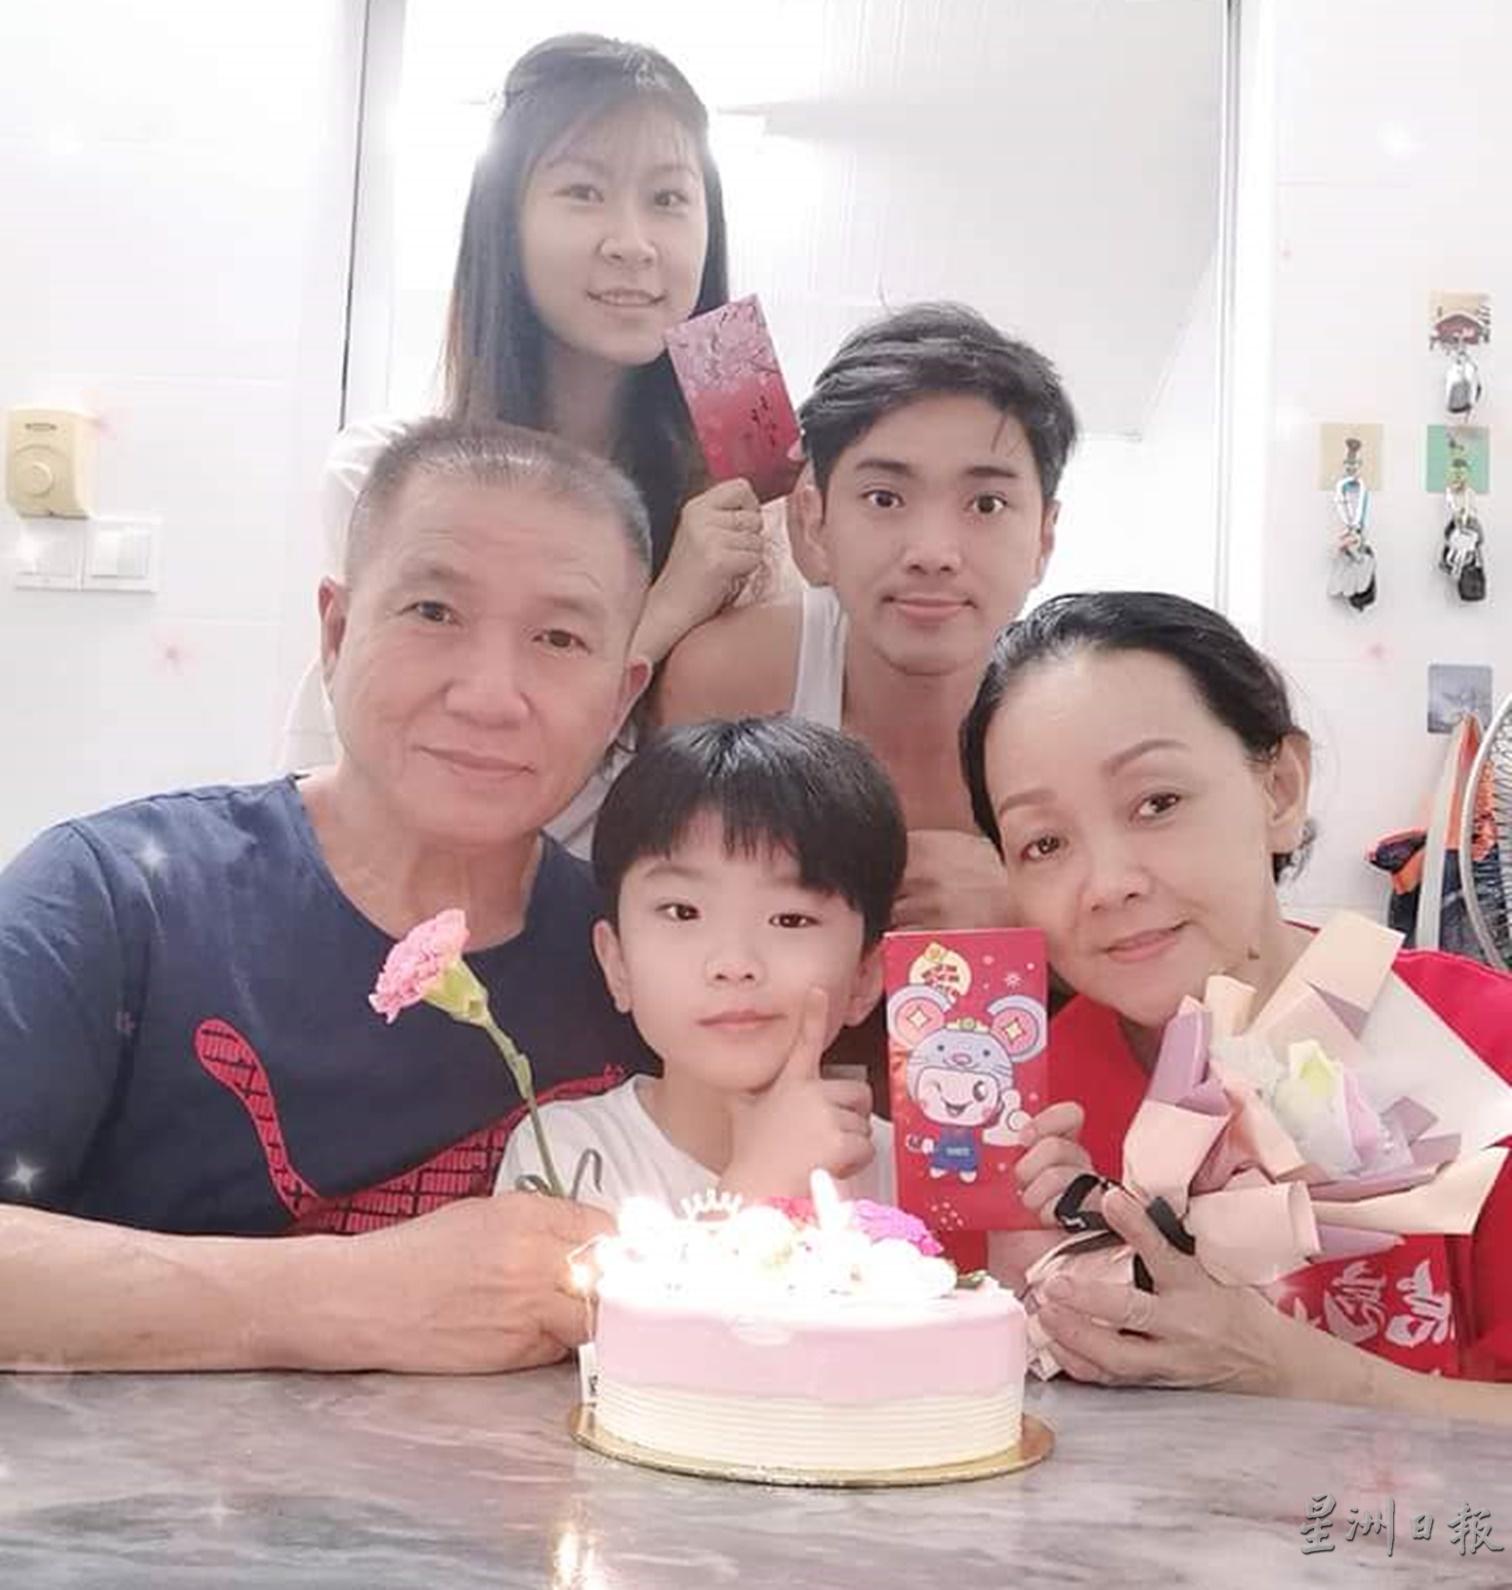 陈雄伟非常注重亲情，一家人与父母亲为孩子庆生。

